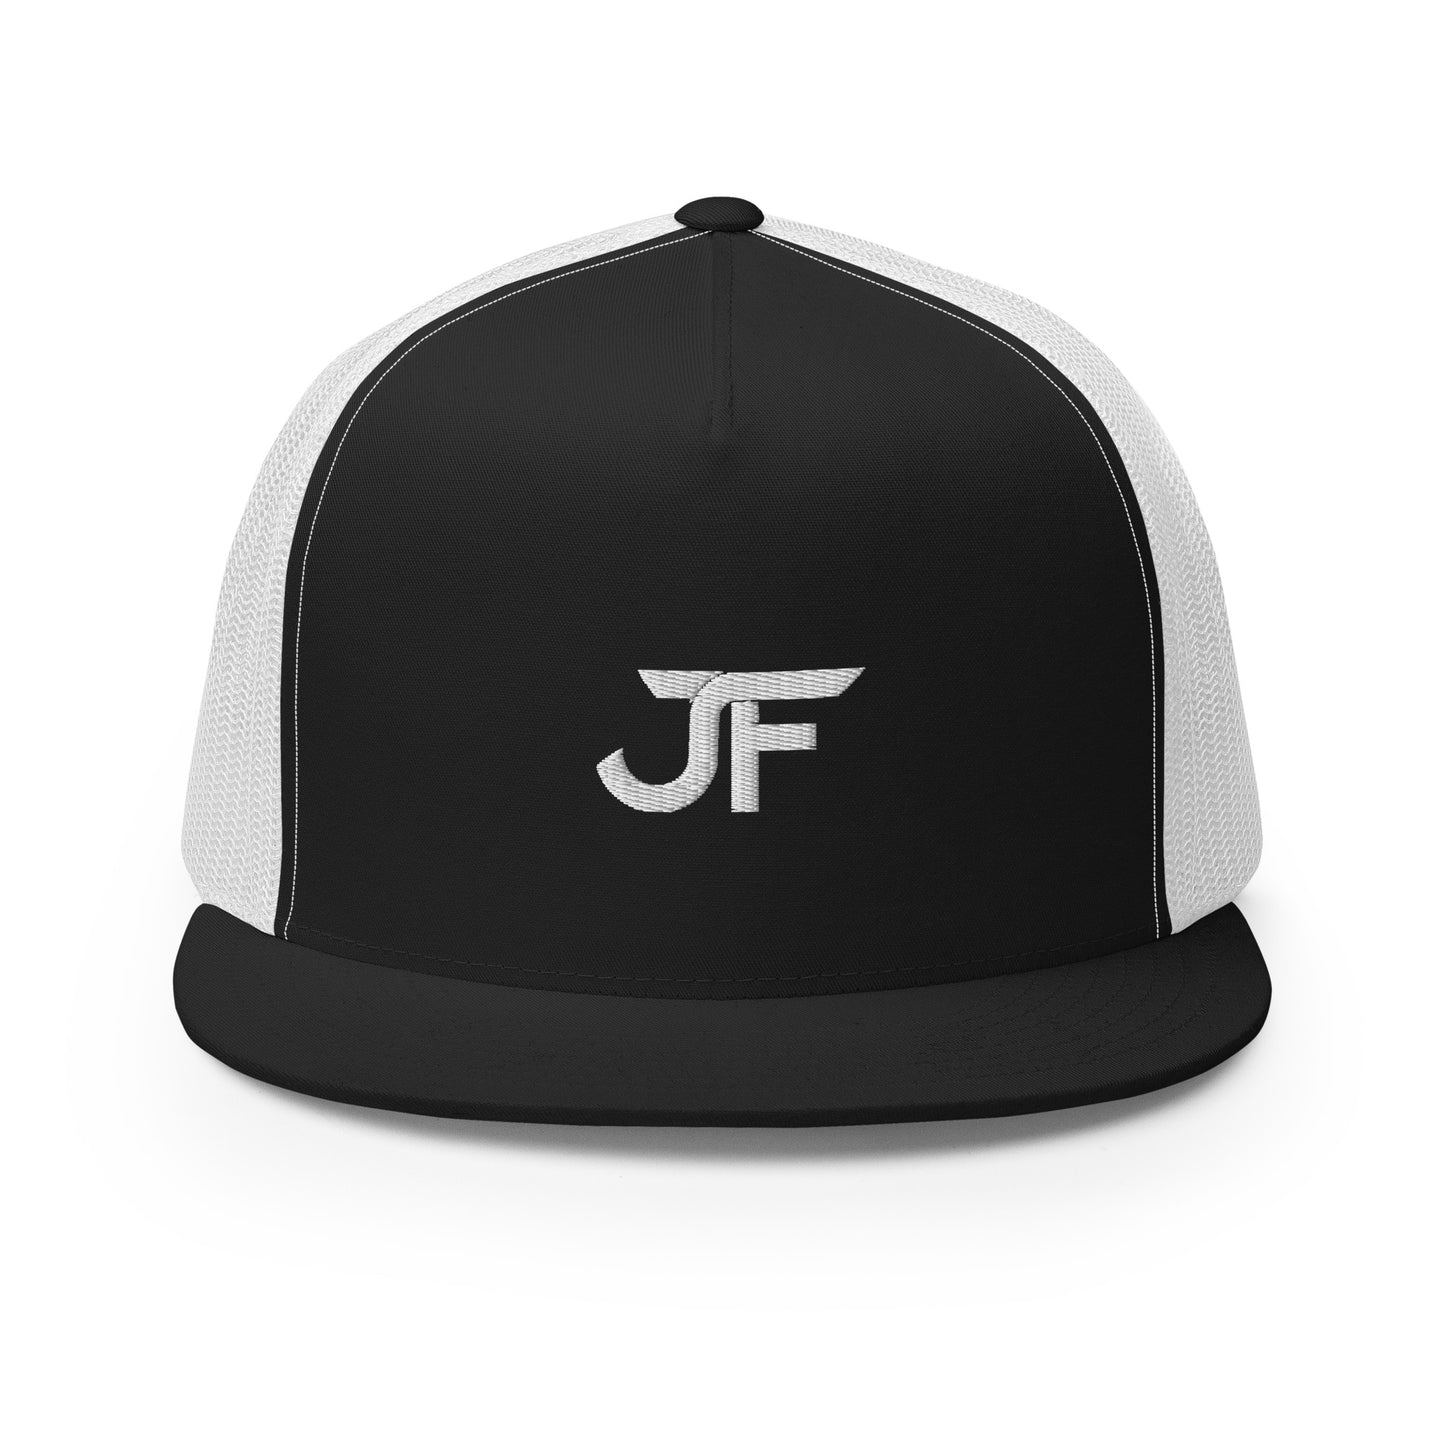 Jack Francis "JF" Trucker Cap